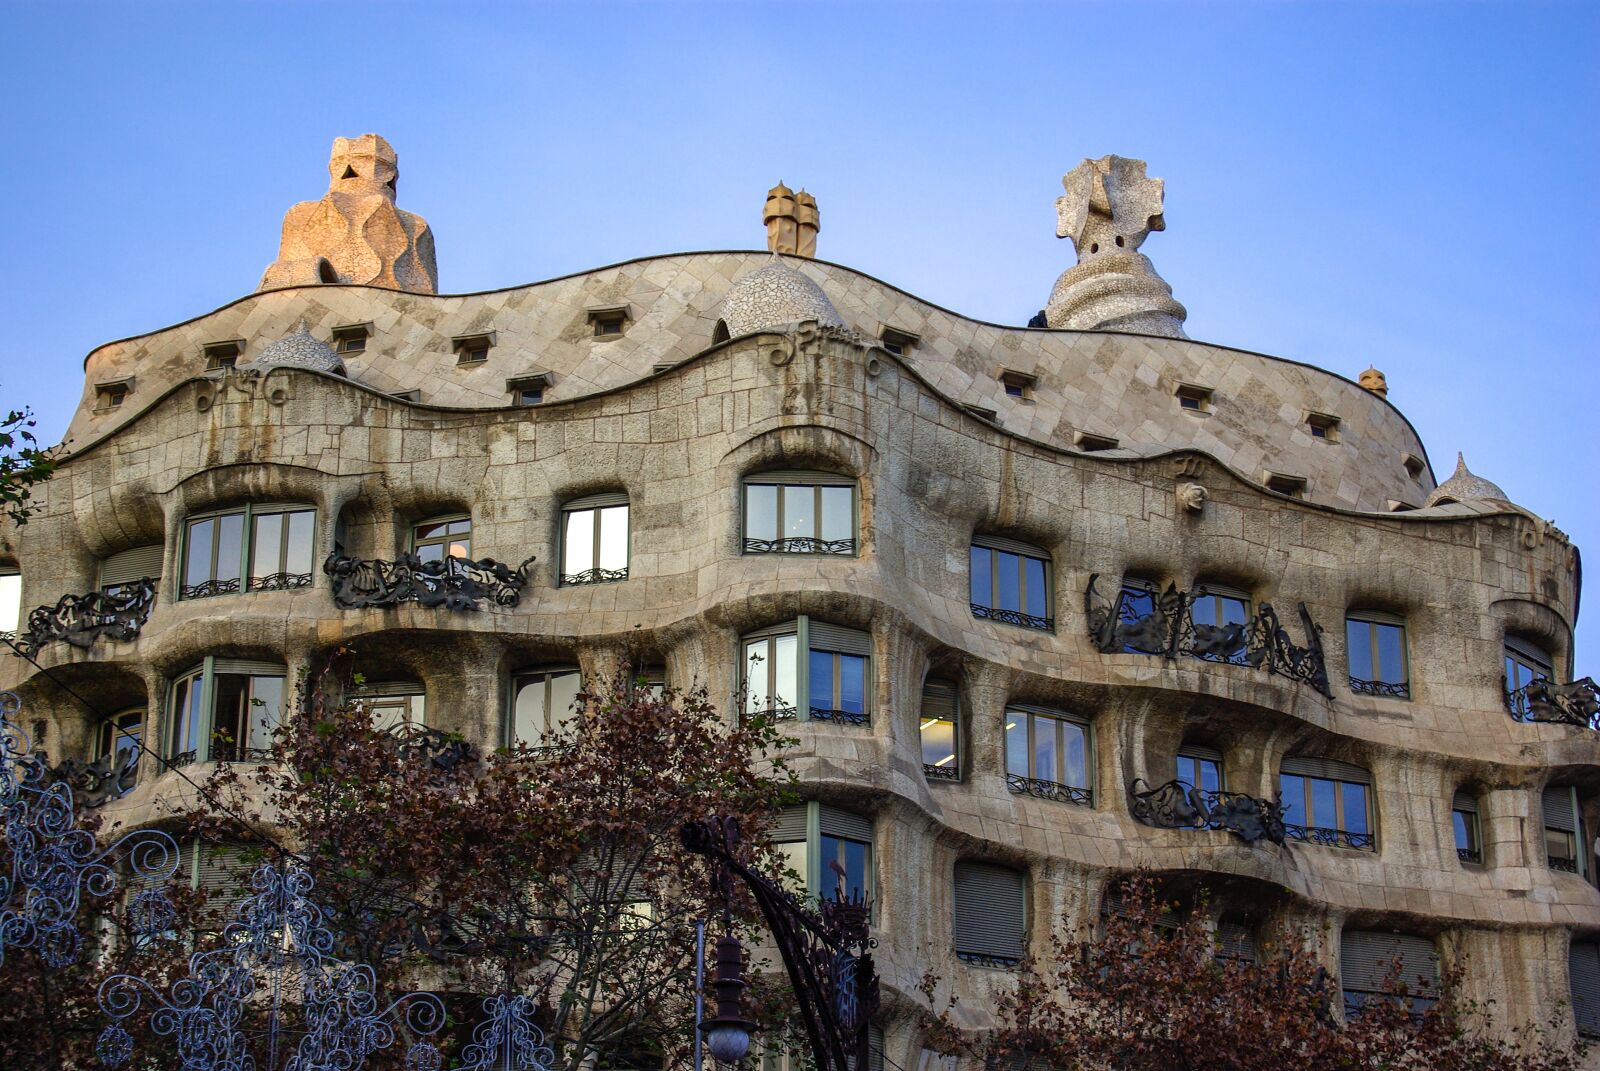 Pentax K10D sample photo. Gaudi, casa mila, building photography